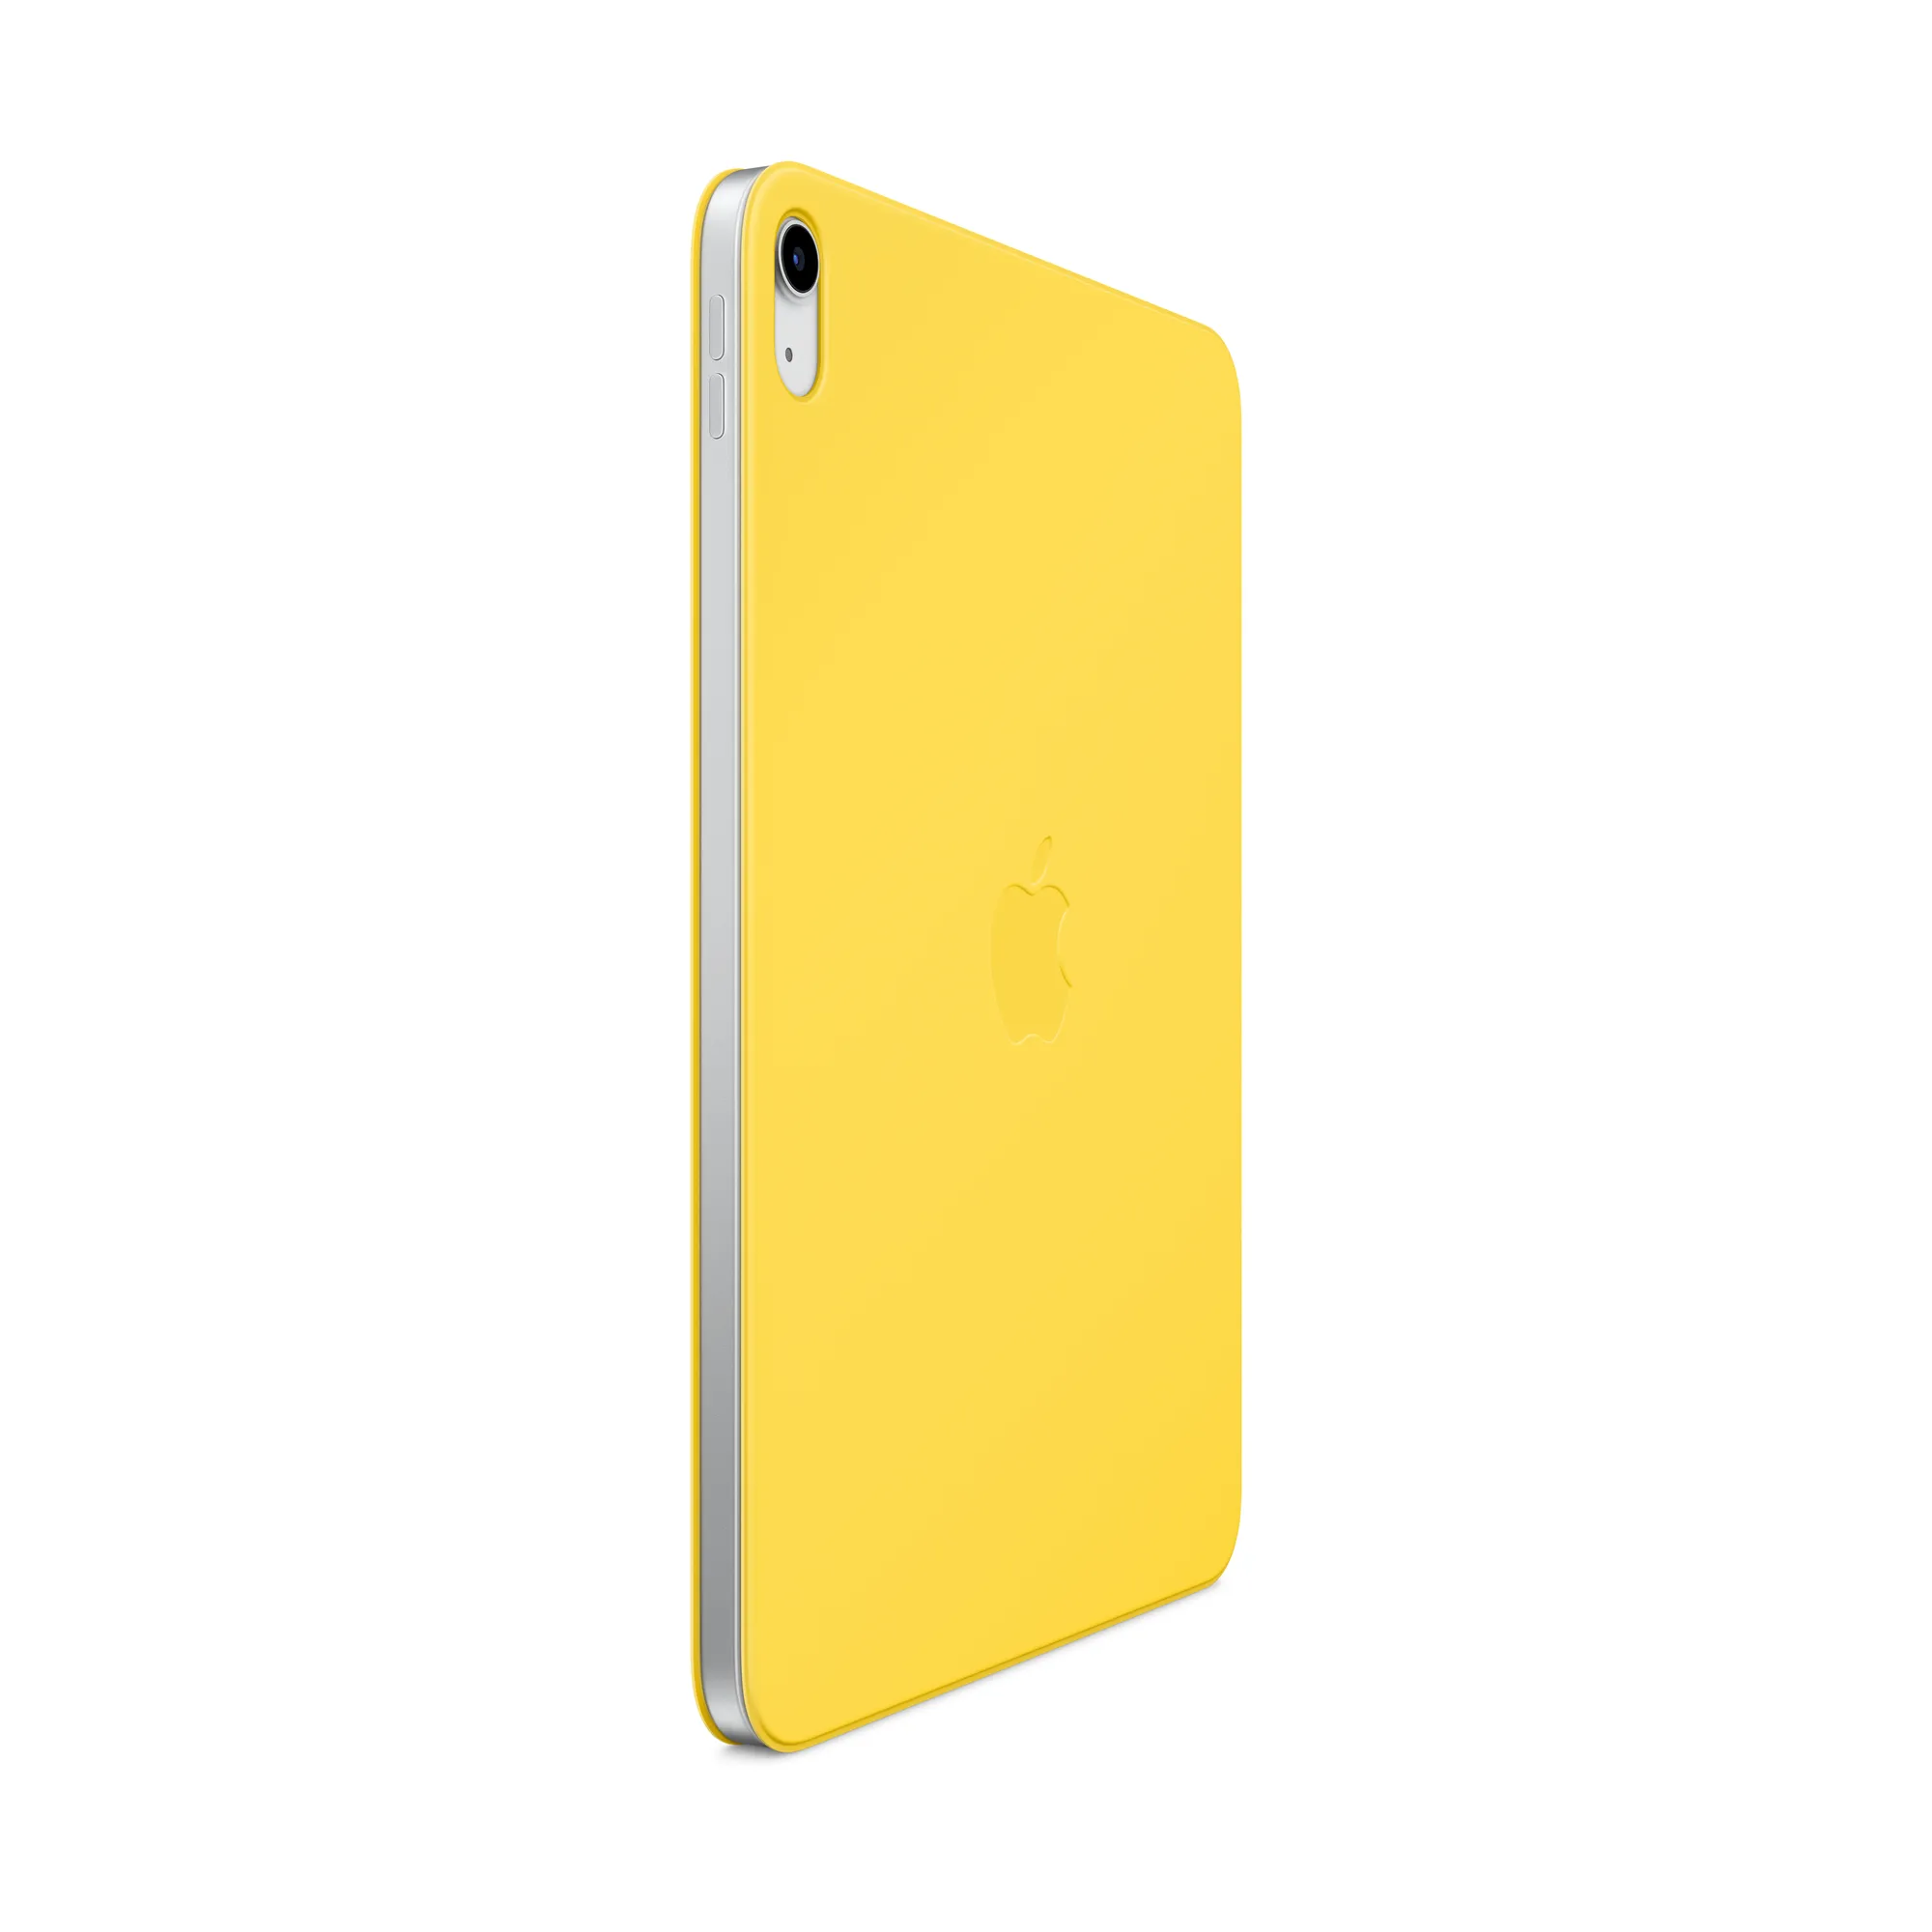 Smart Folio tizedik generációs iPadhez – citromsárga